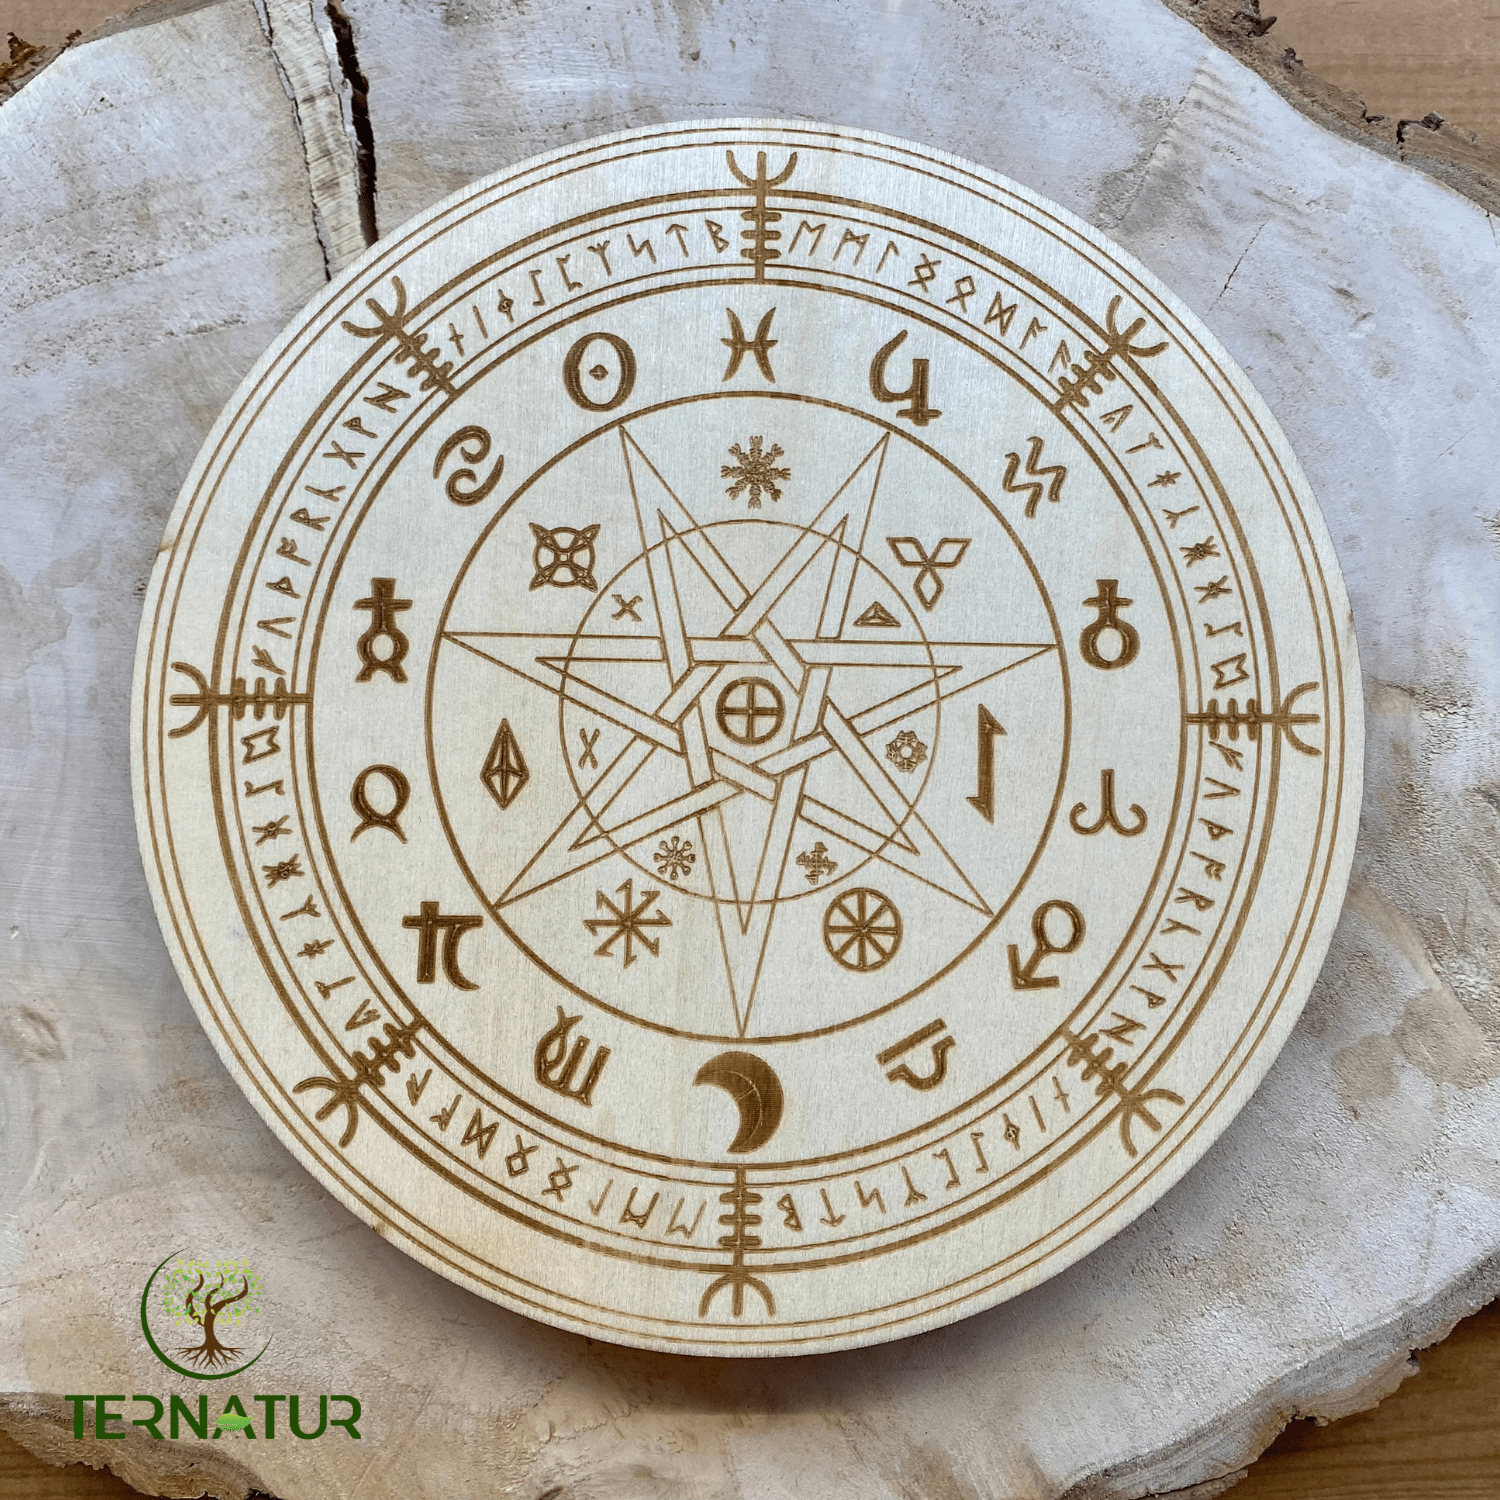 plaque - runes - viking - ternatur